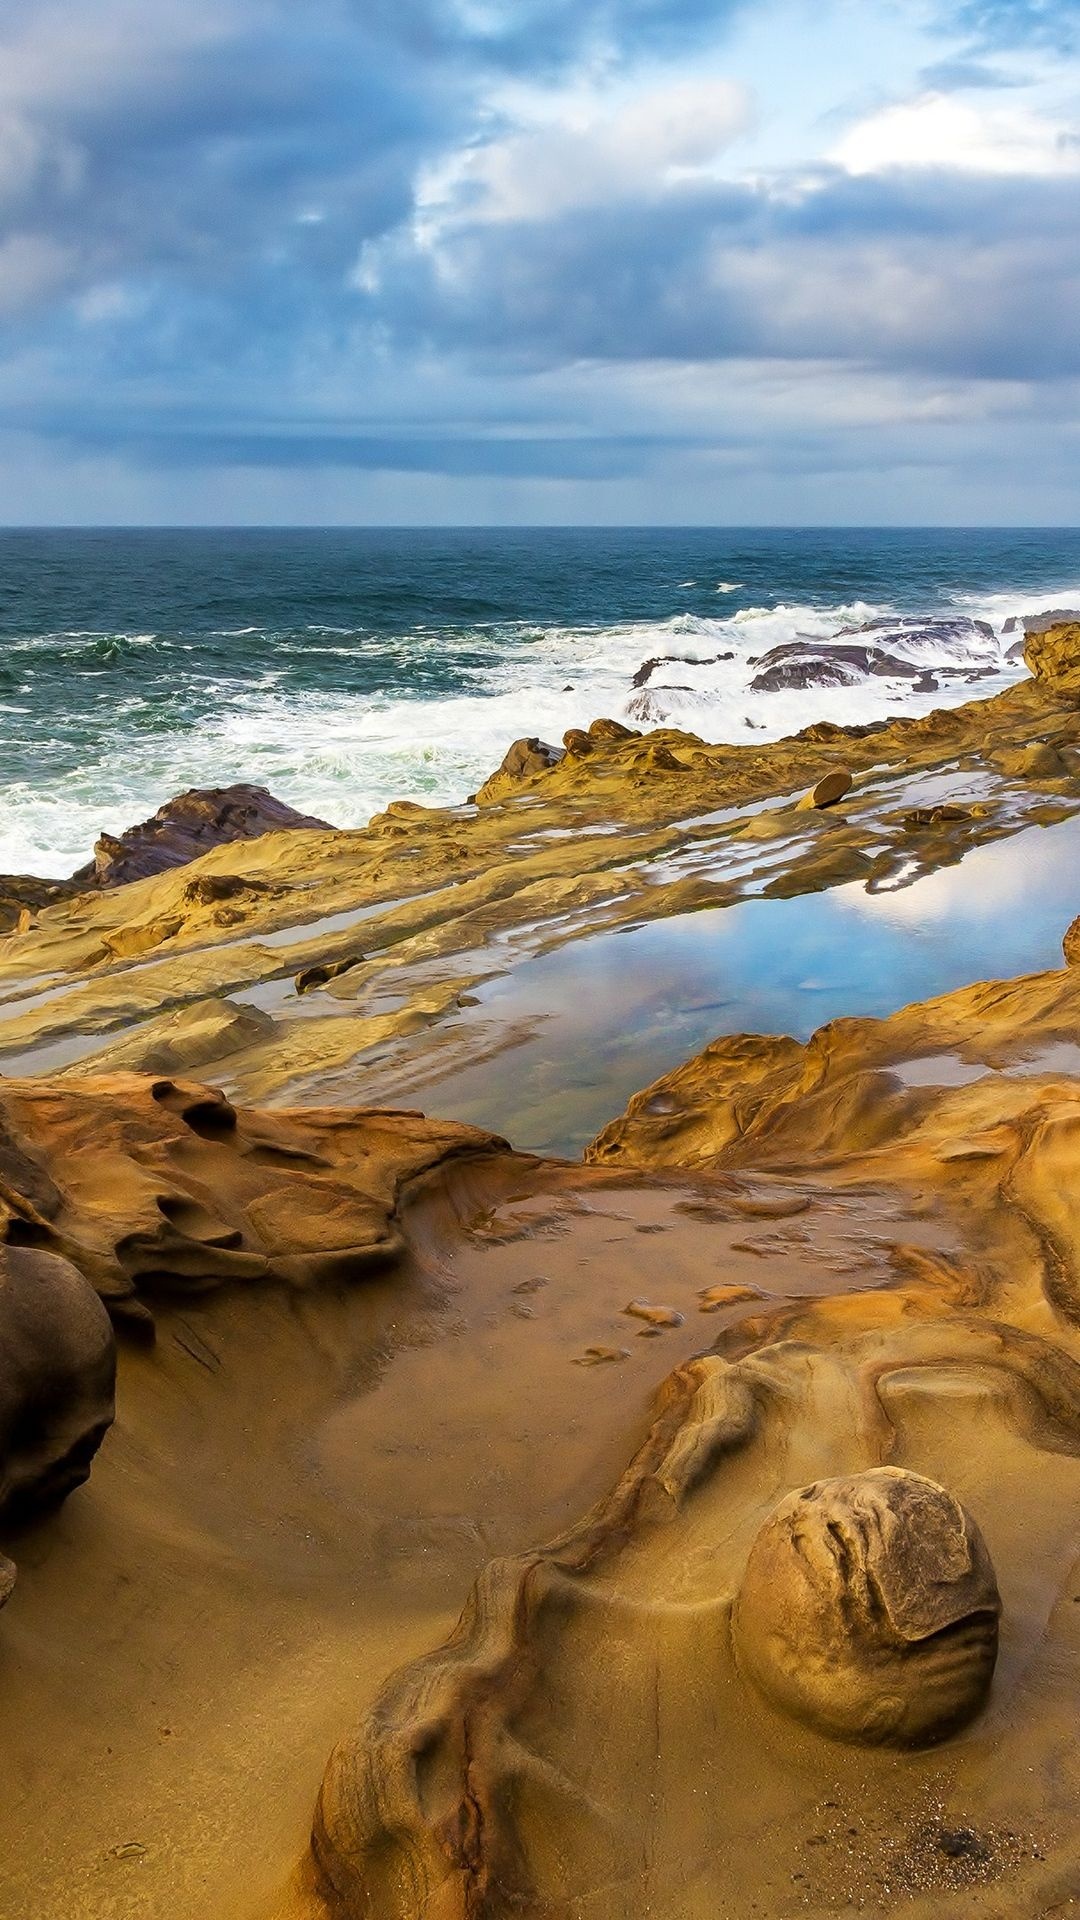 Ocean landscape, Pristine beauty, 4K Ultra HD, Nature's masterpiece, 1080x1920 Full HD Handy